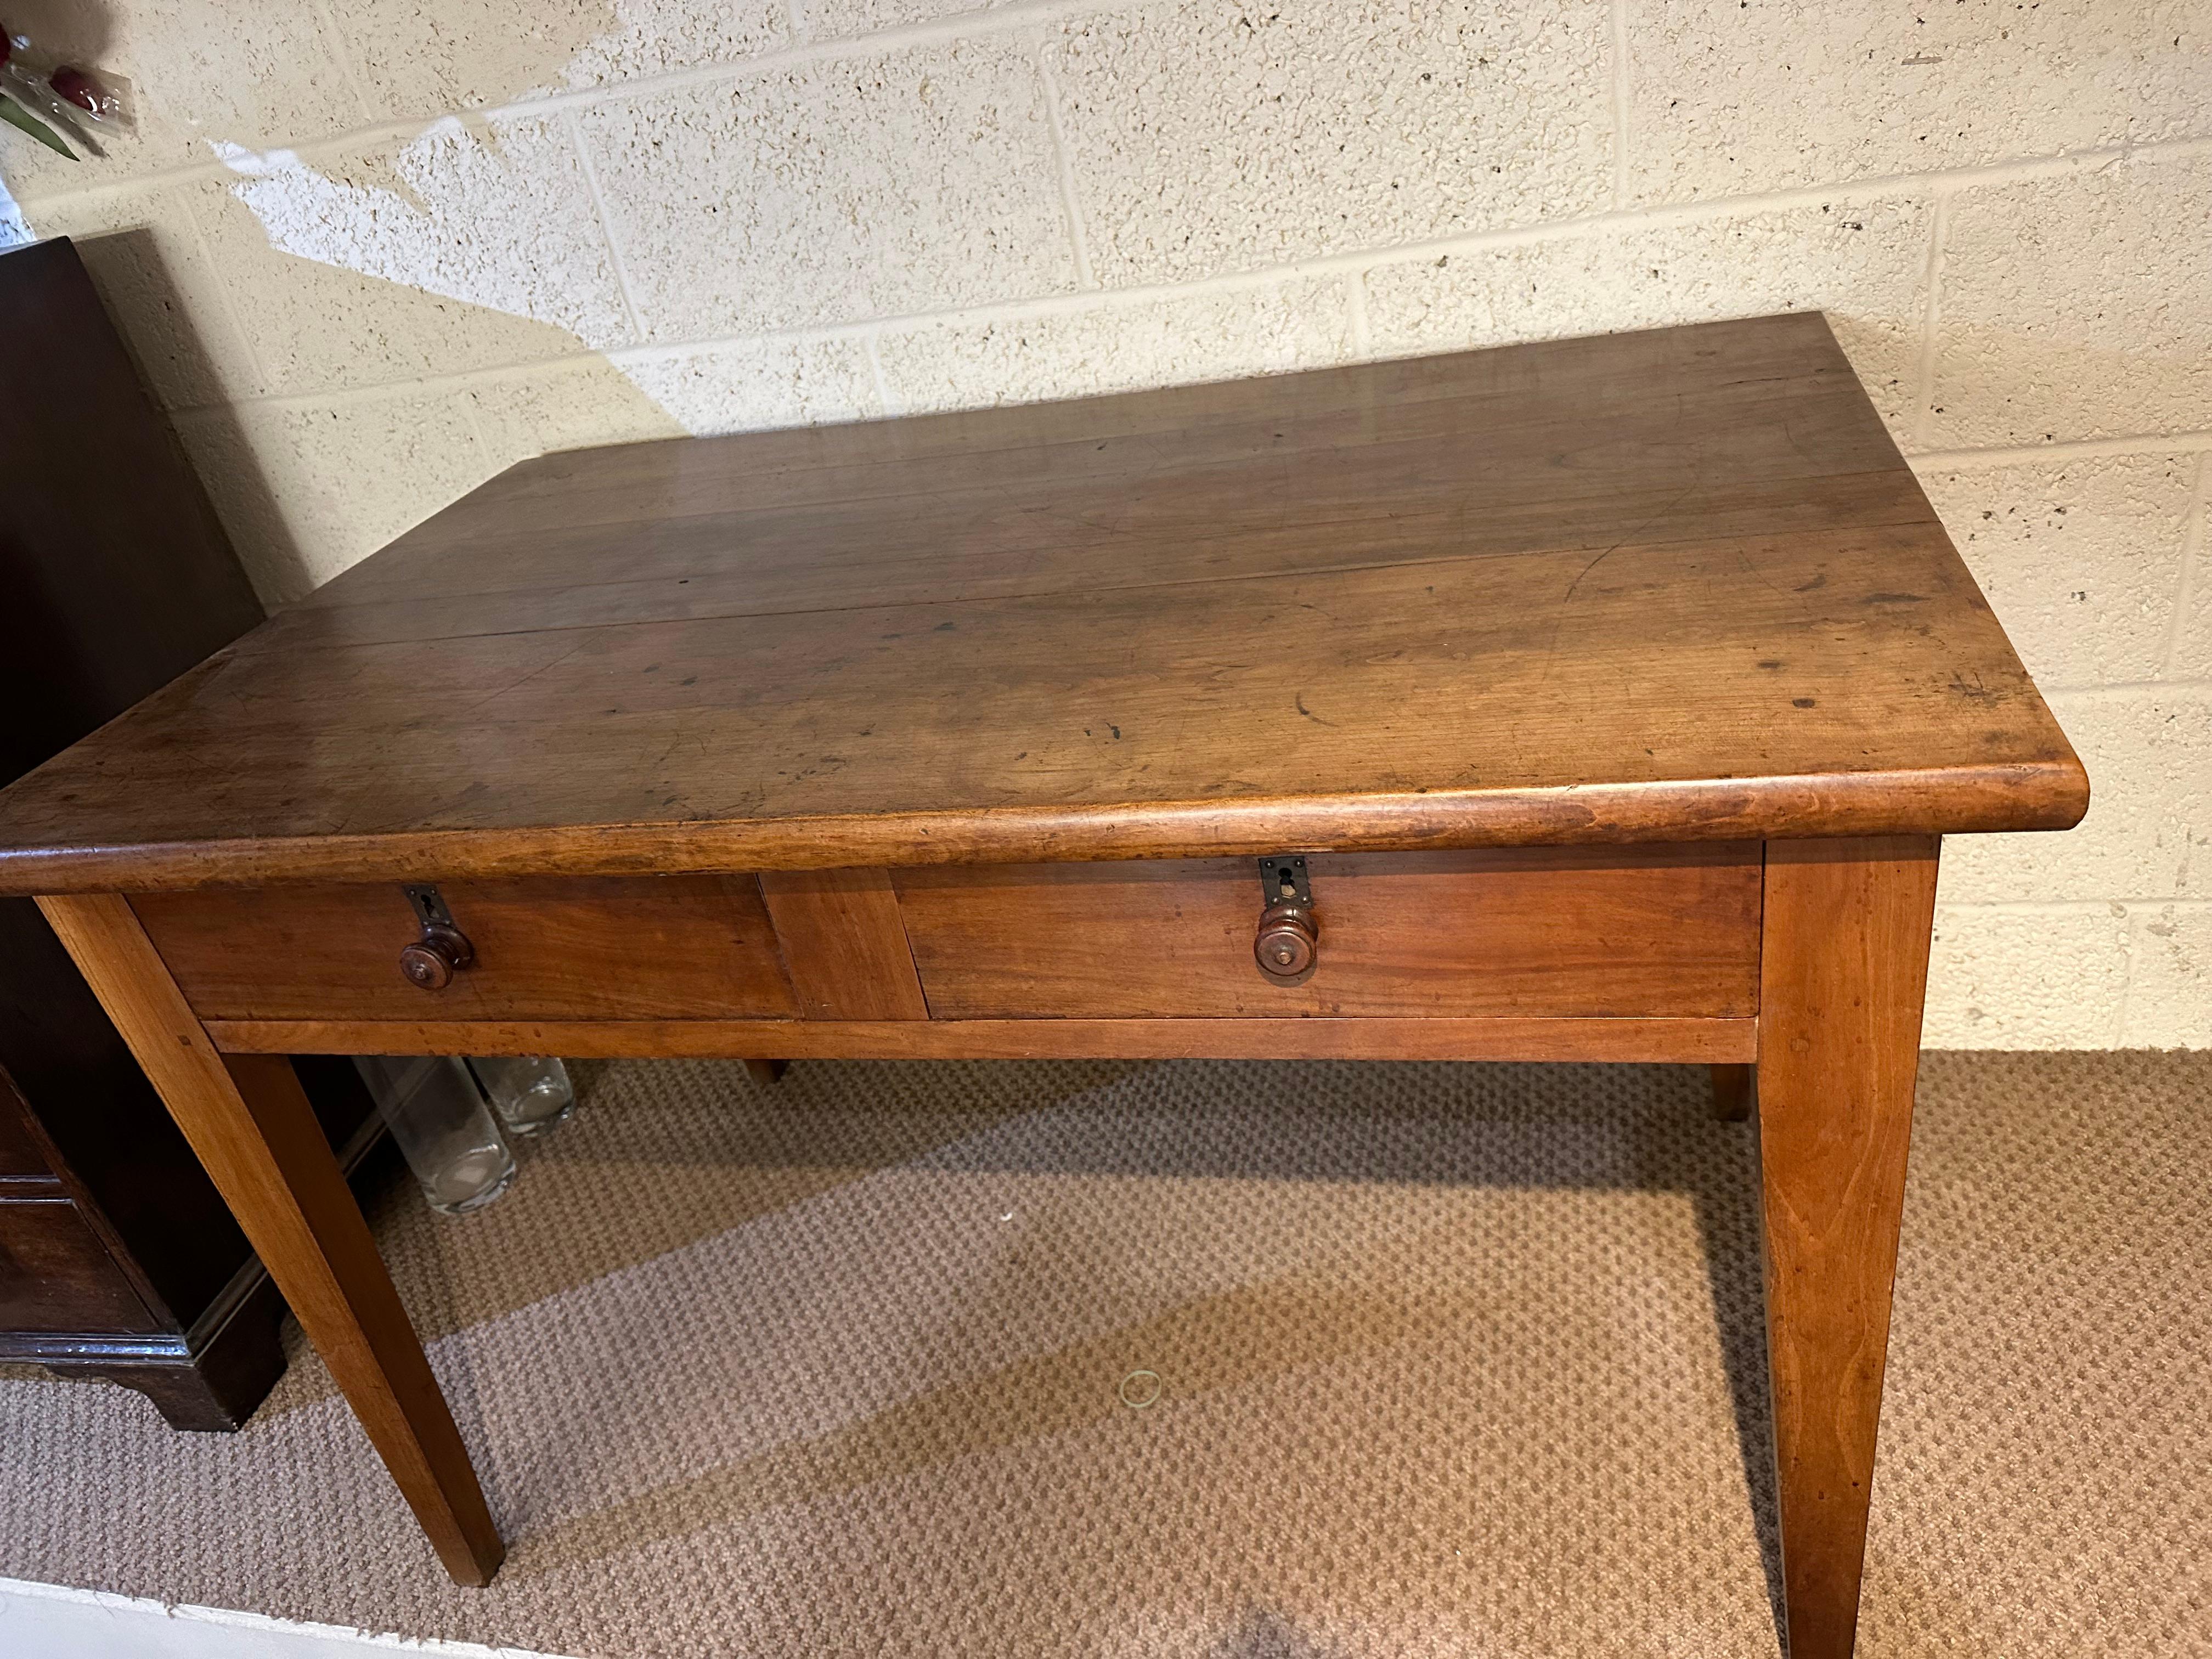 Der Schreibtisch mit zwei Schubladen aus Kirsche des 19. Jahrhunderts auf konischen Beinen ist ein bemerkenswertes Möbelstück. Er weist eine schöne Patinierung und Farbe auf, die die natürliche Alterung und Abnutzung zeigt und dem Schreibtisch